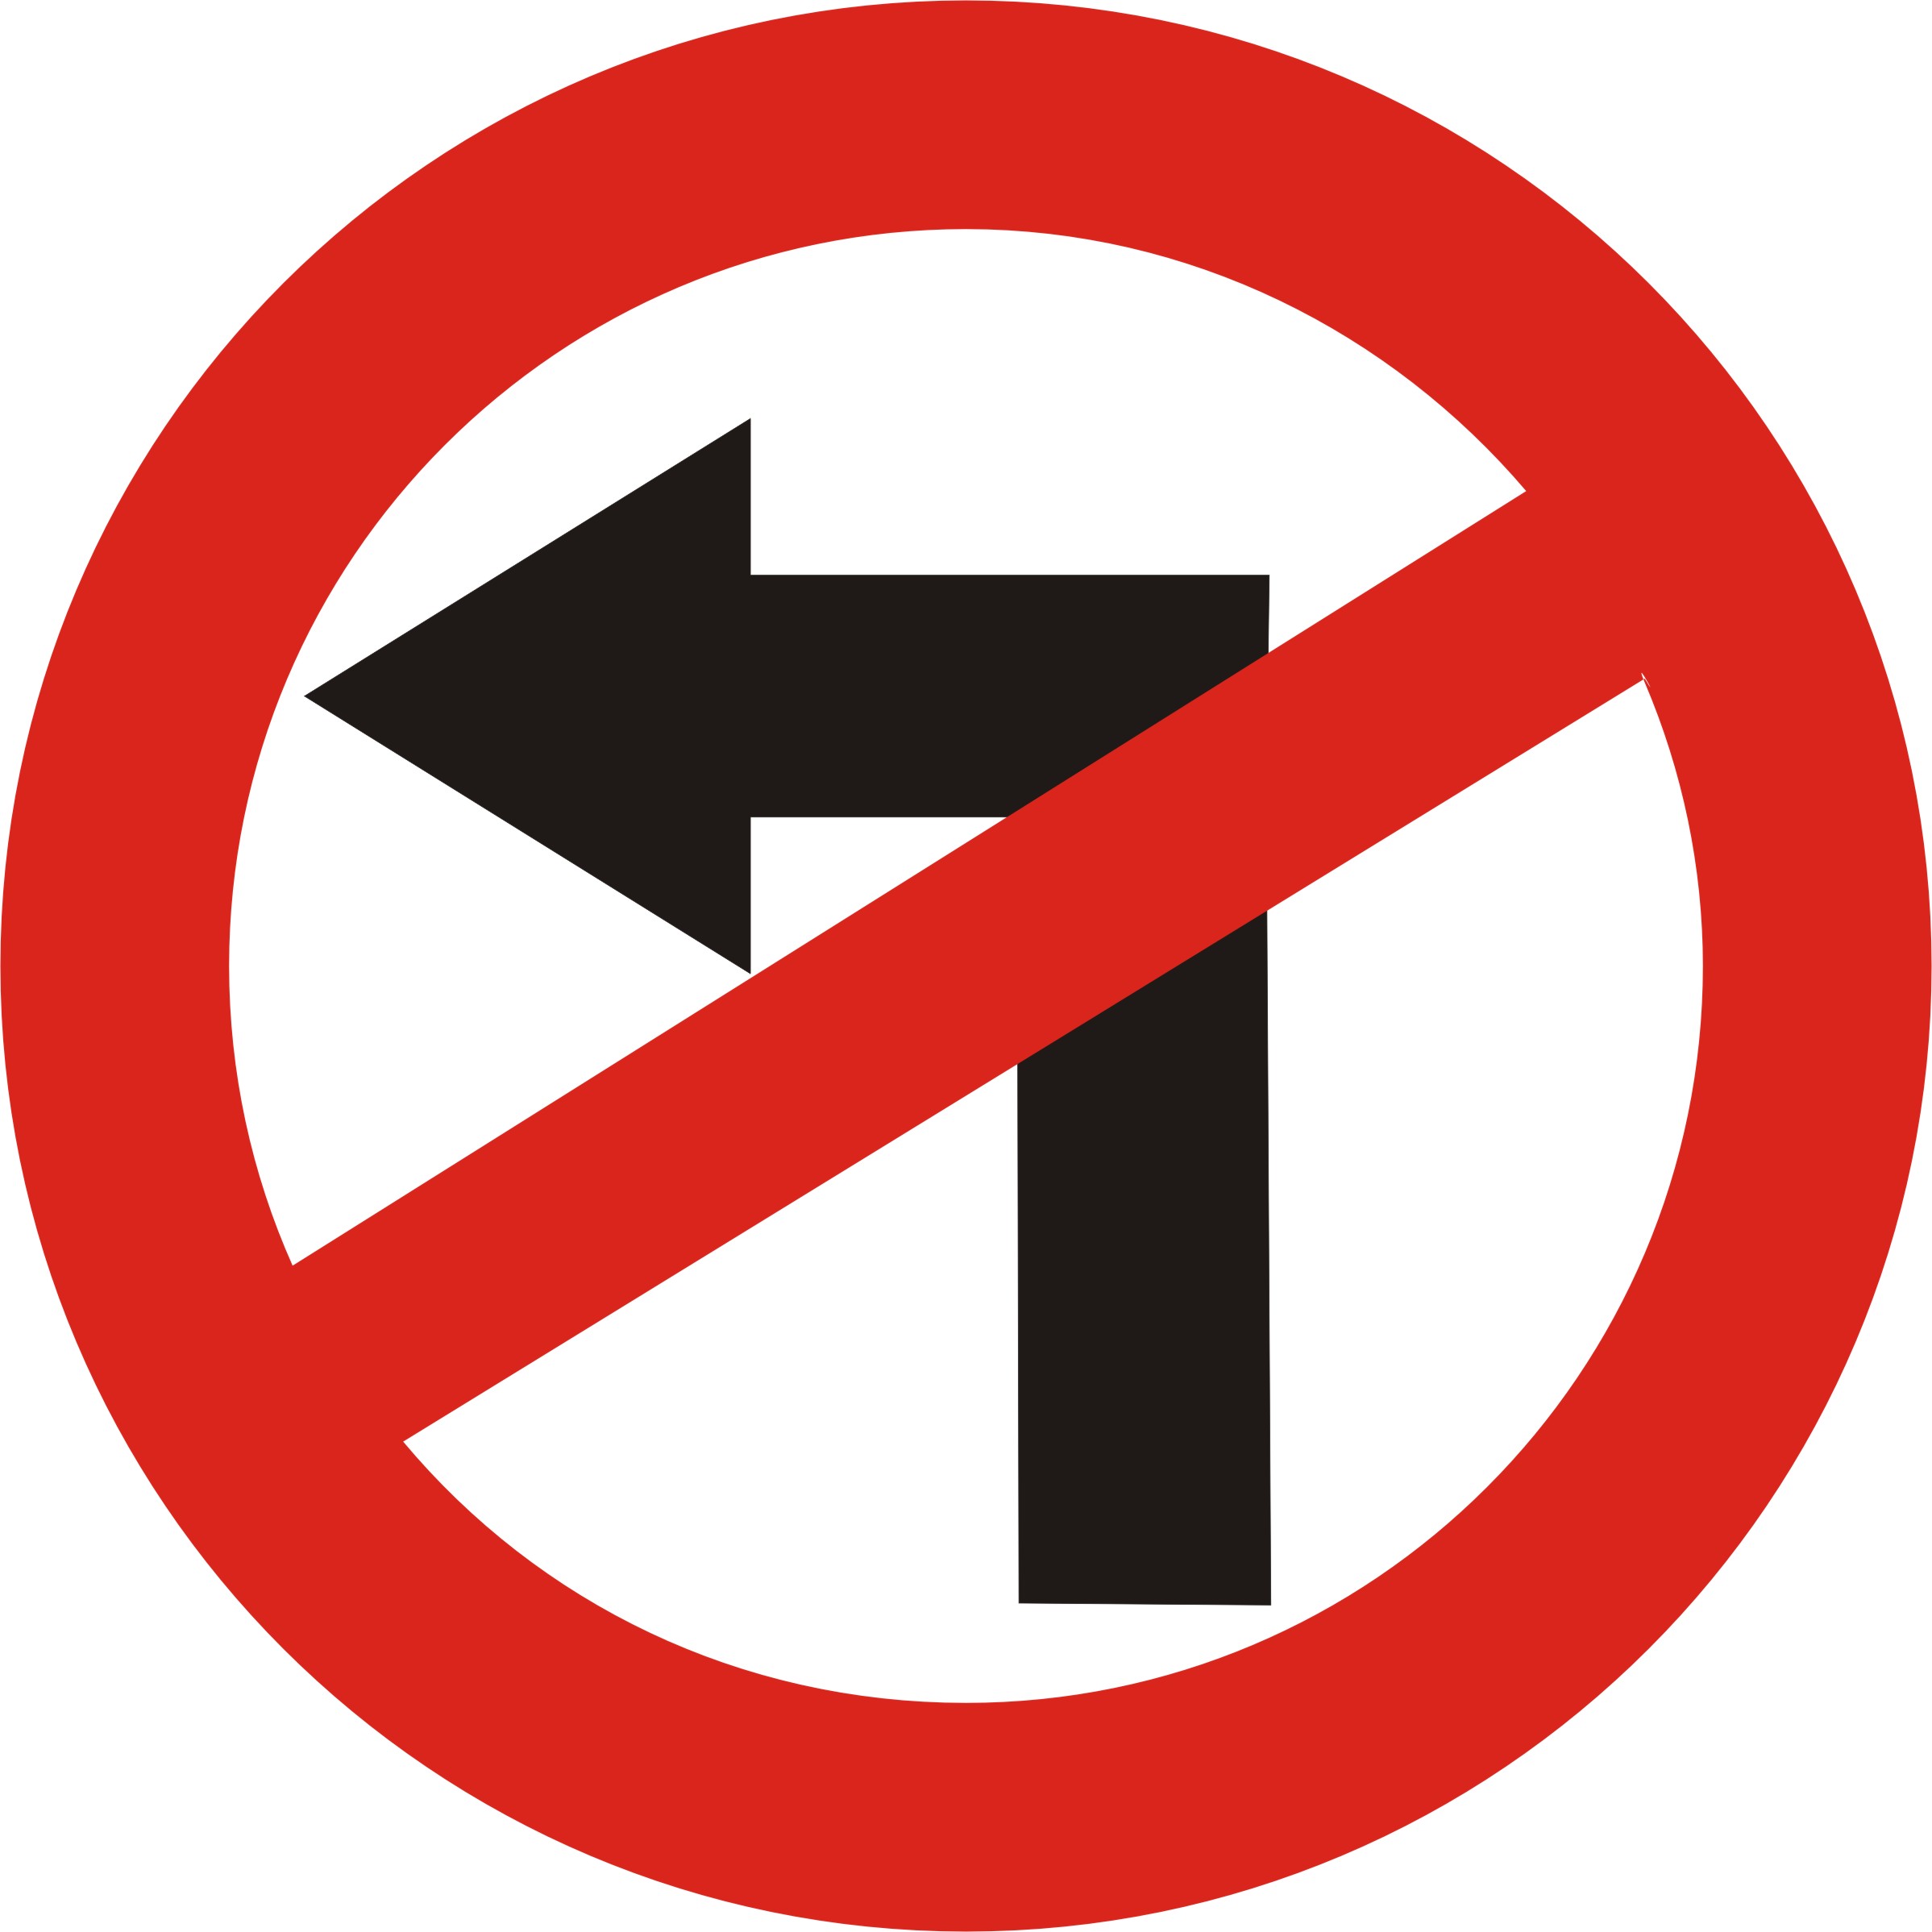 Знак запрещающий движение налево. Поворот налево запрещен. Знак налево запрещено. Дорожный знак поворот запрещен. Знаки дорожного движения поворот налево запрещен.